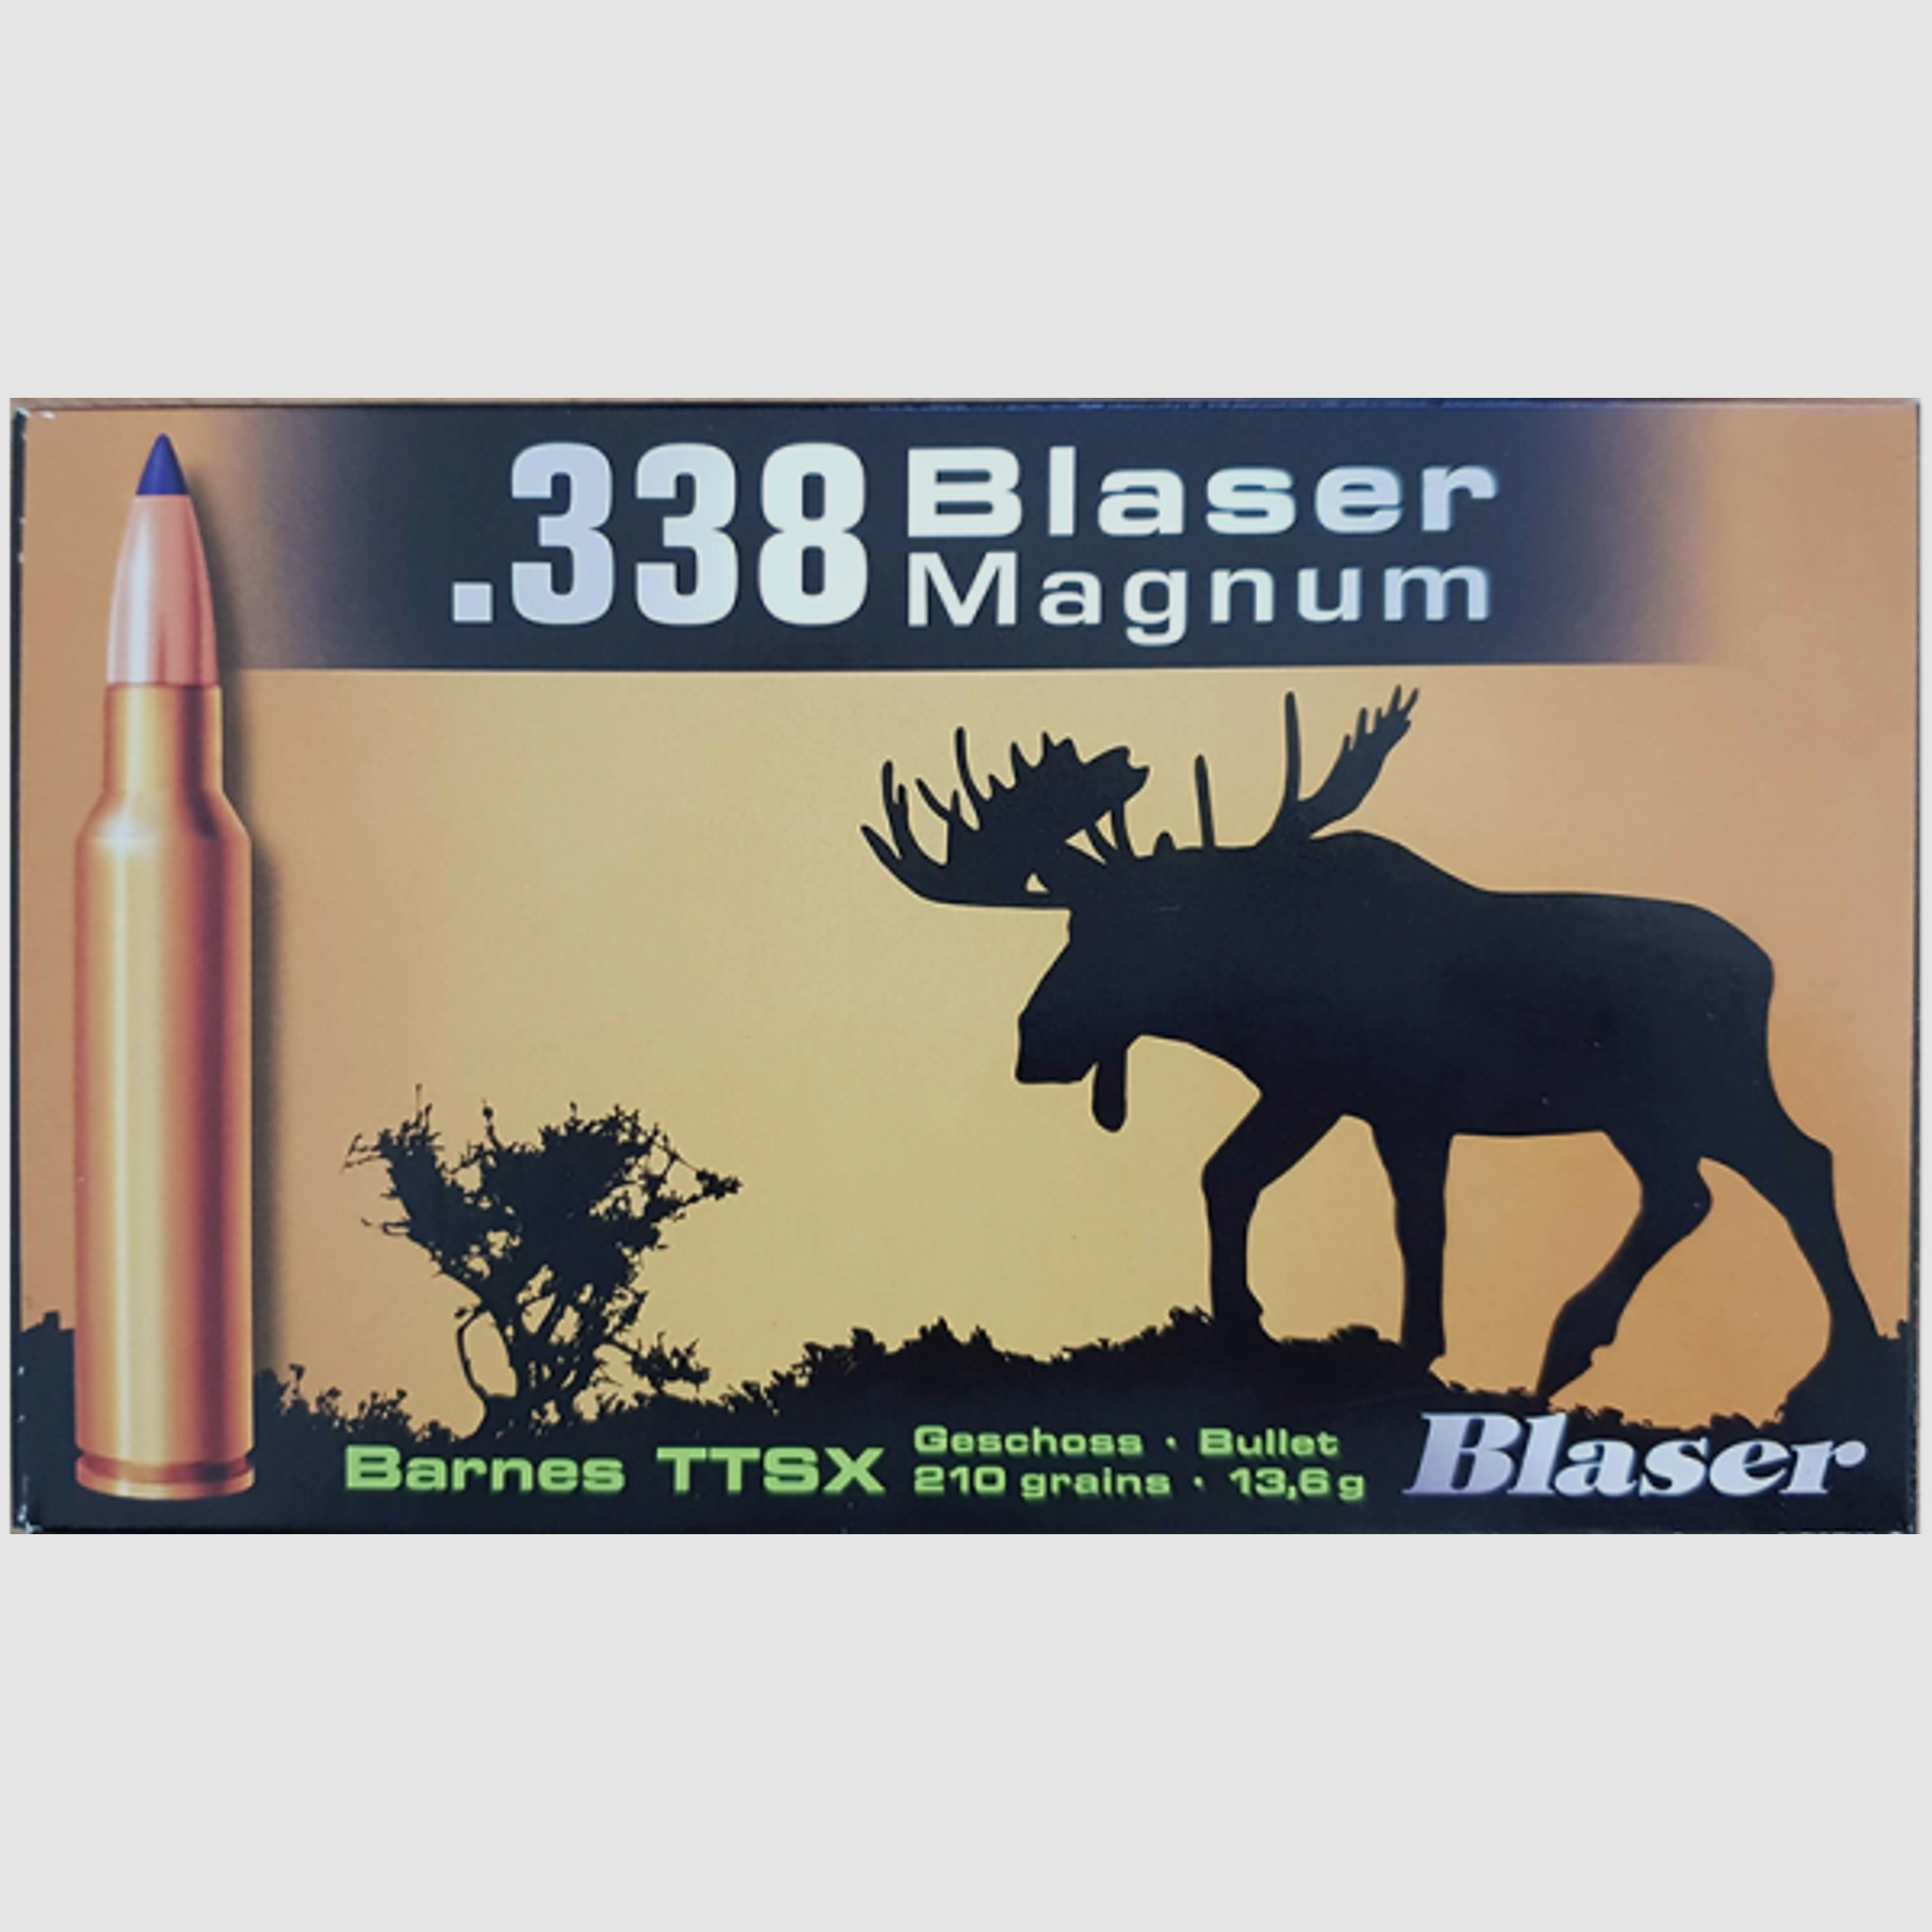 Blaser Magnum .338 Blaser Mag Barnes TTSX 210 grs Büchsenpatronen